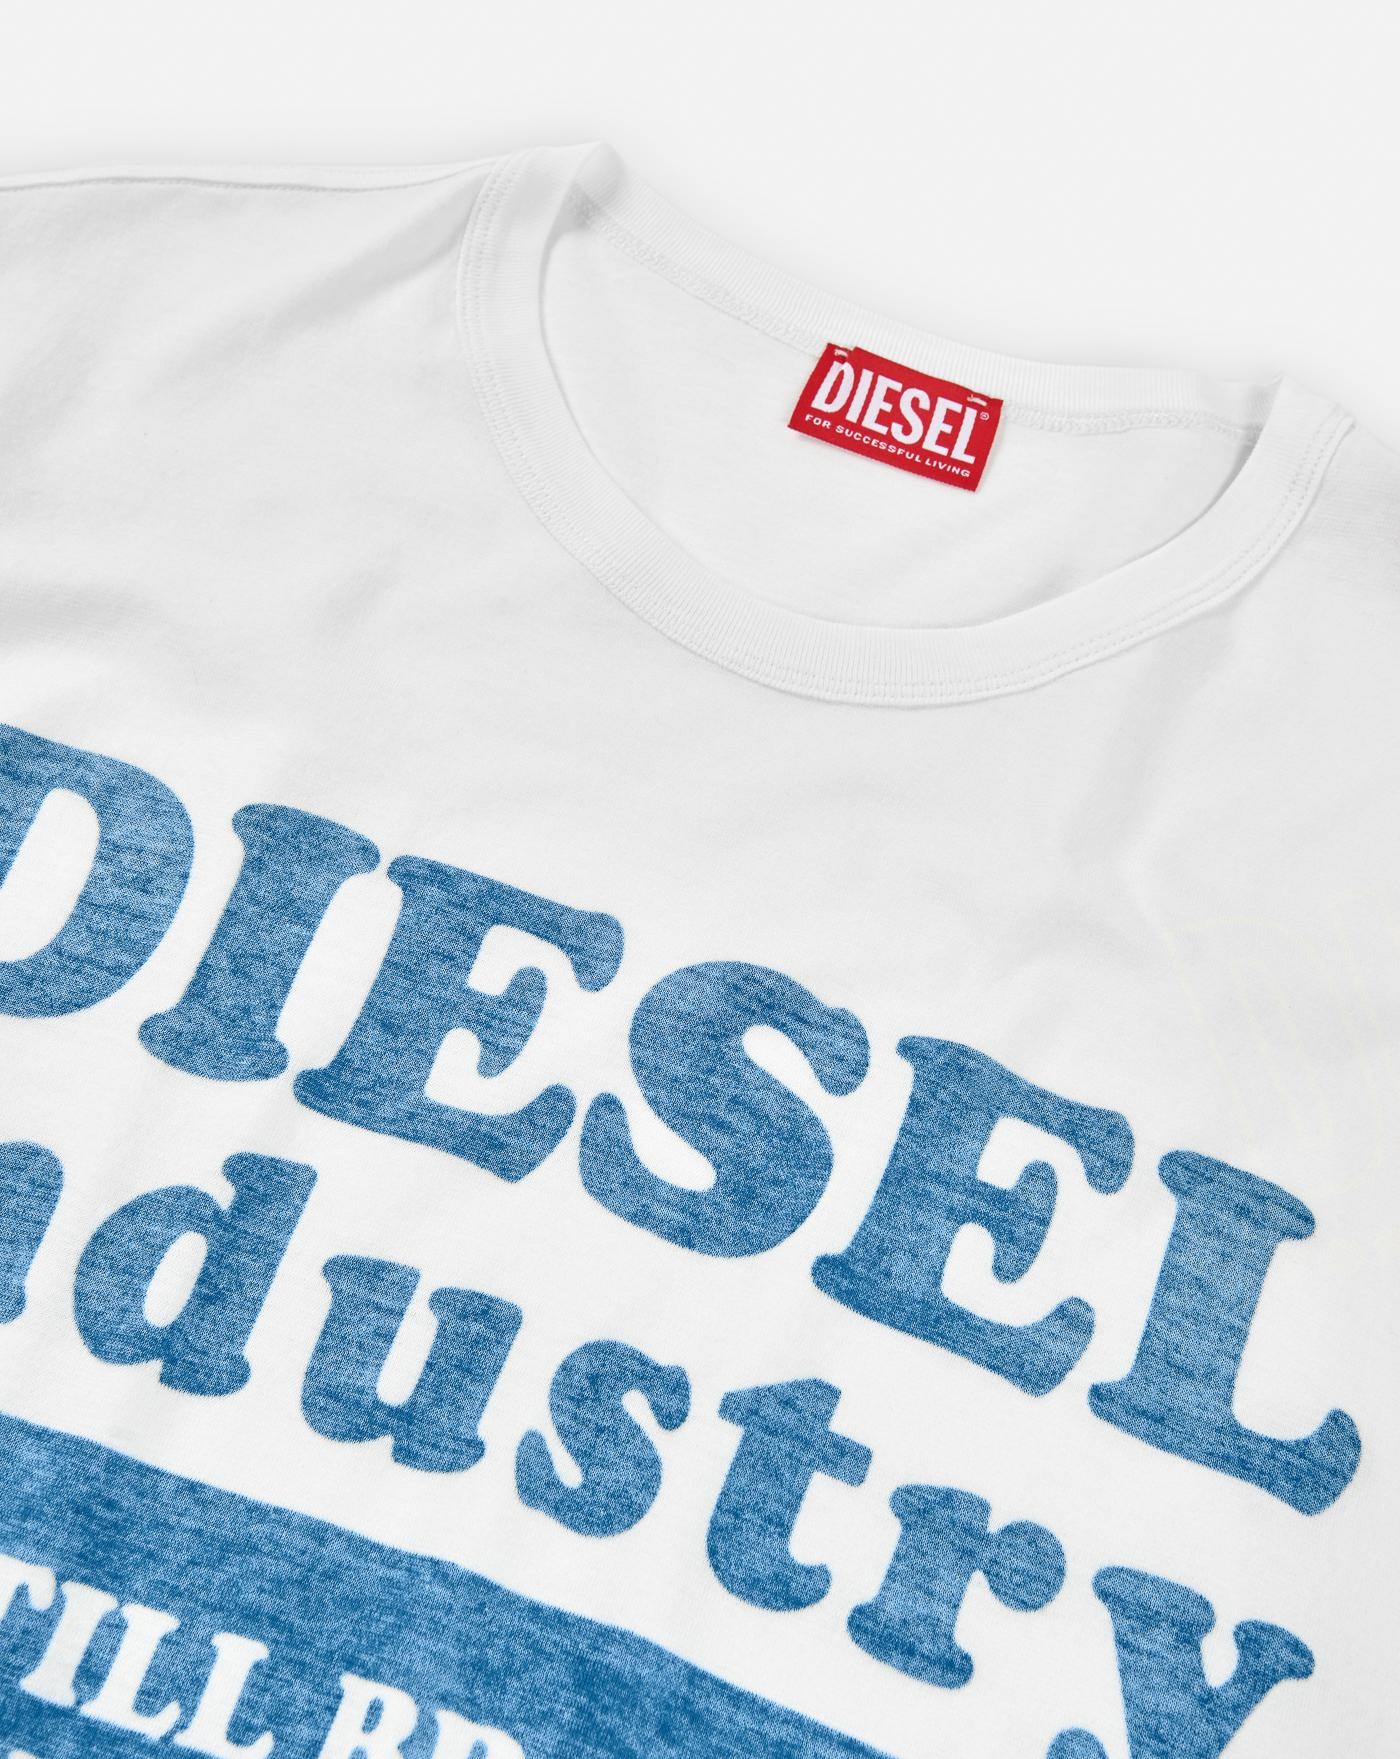 Camiseta Diesel Industry 3